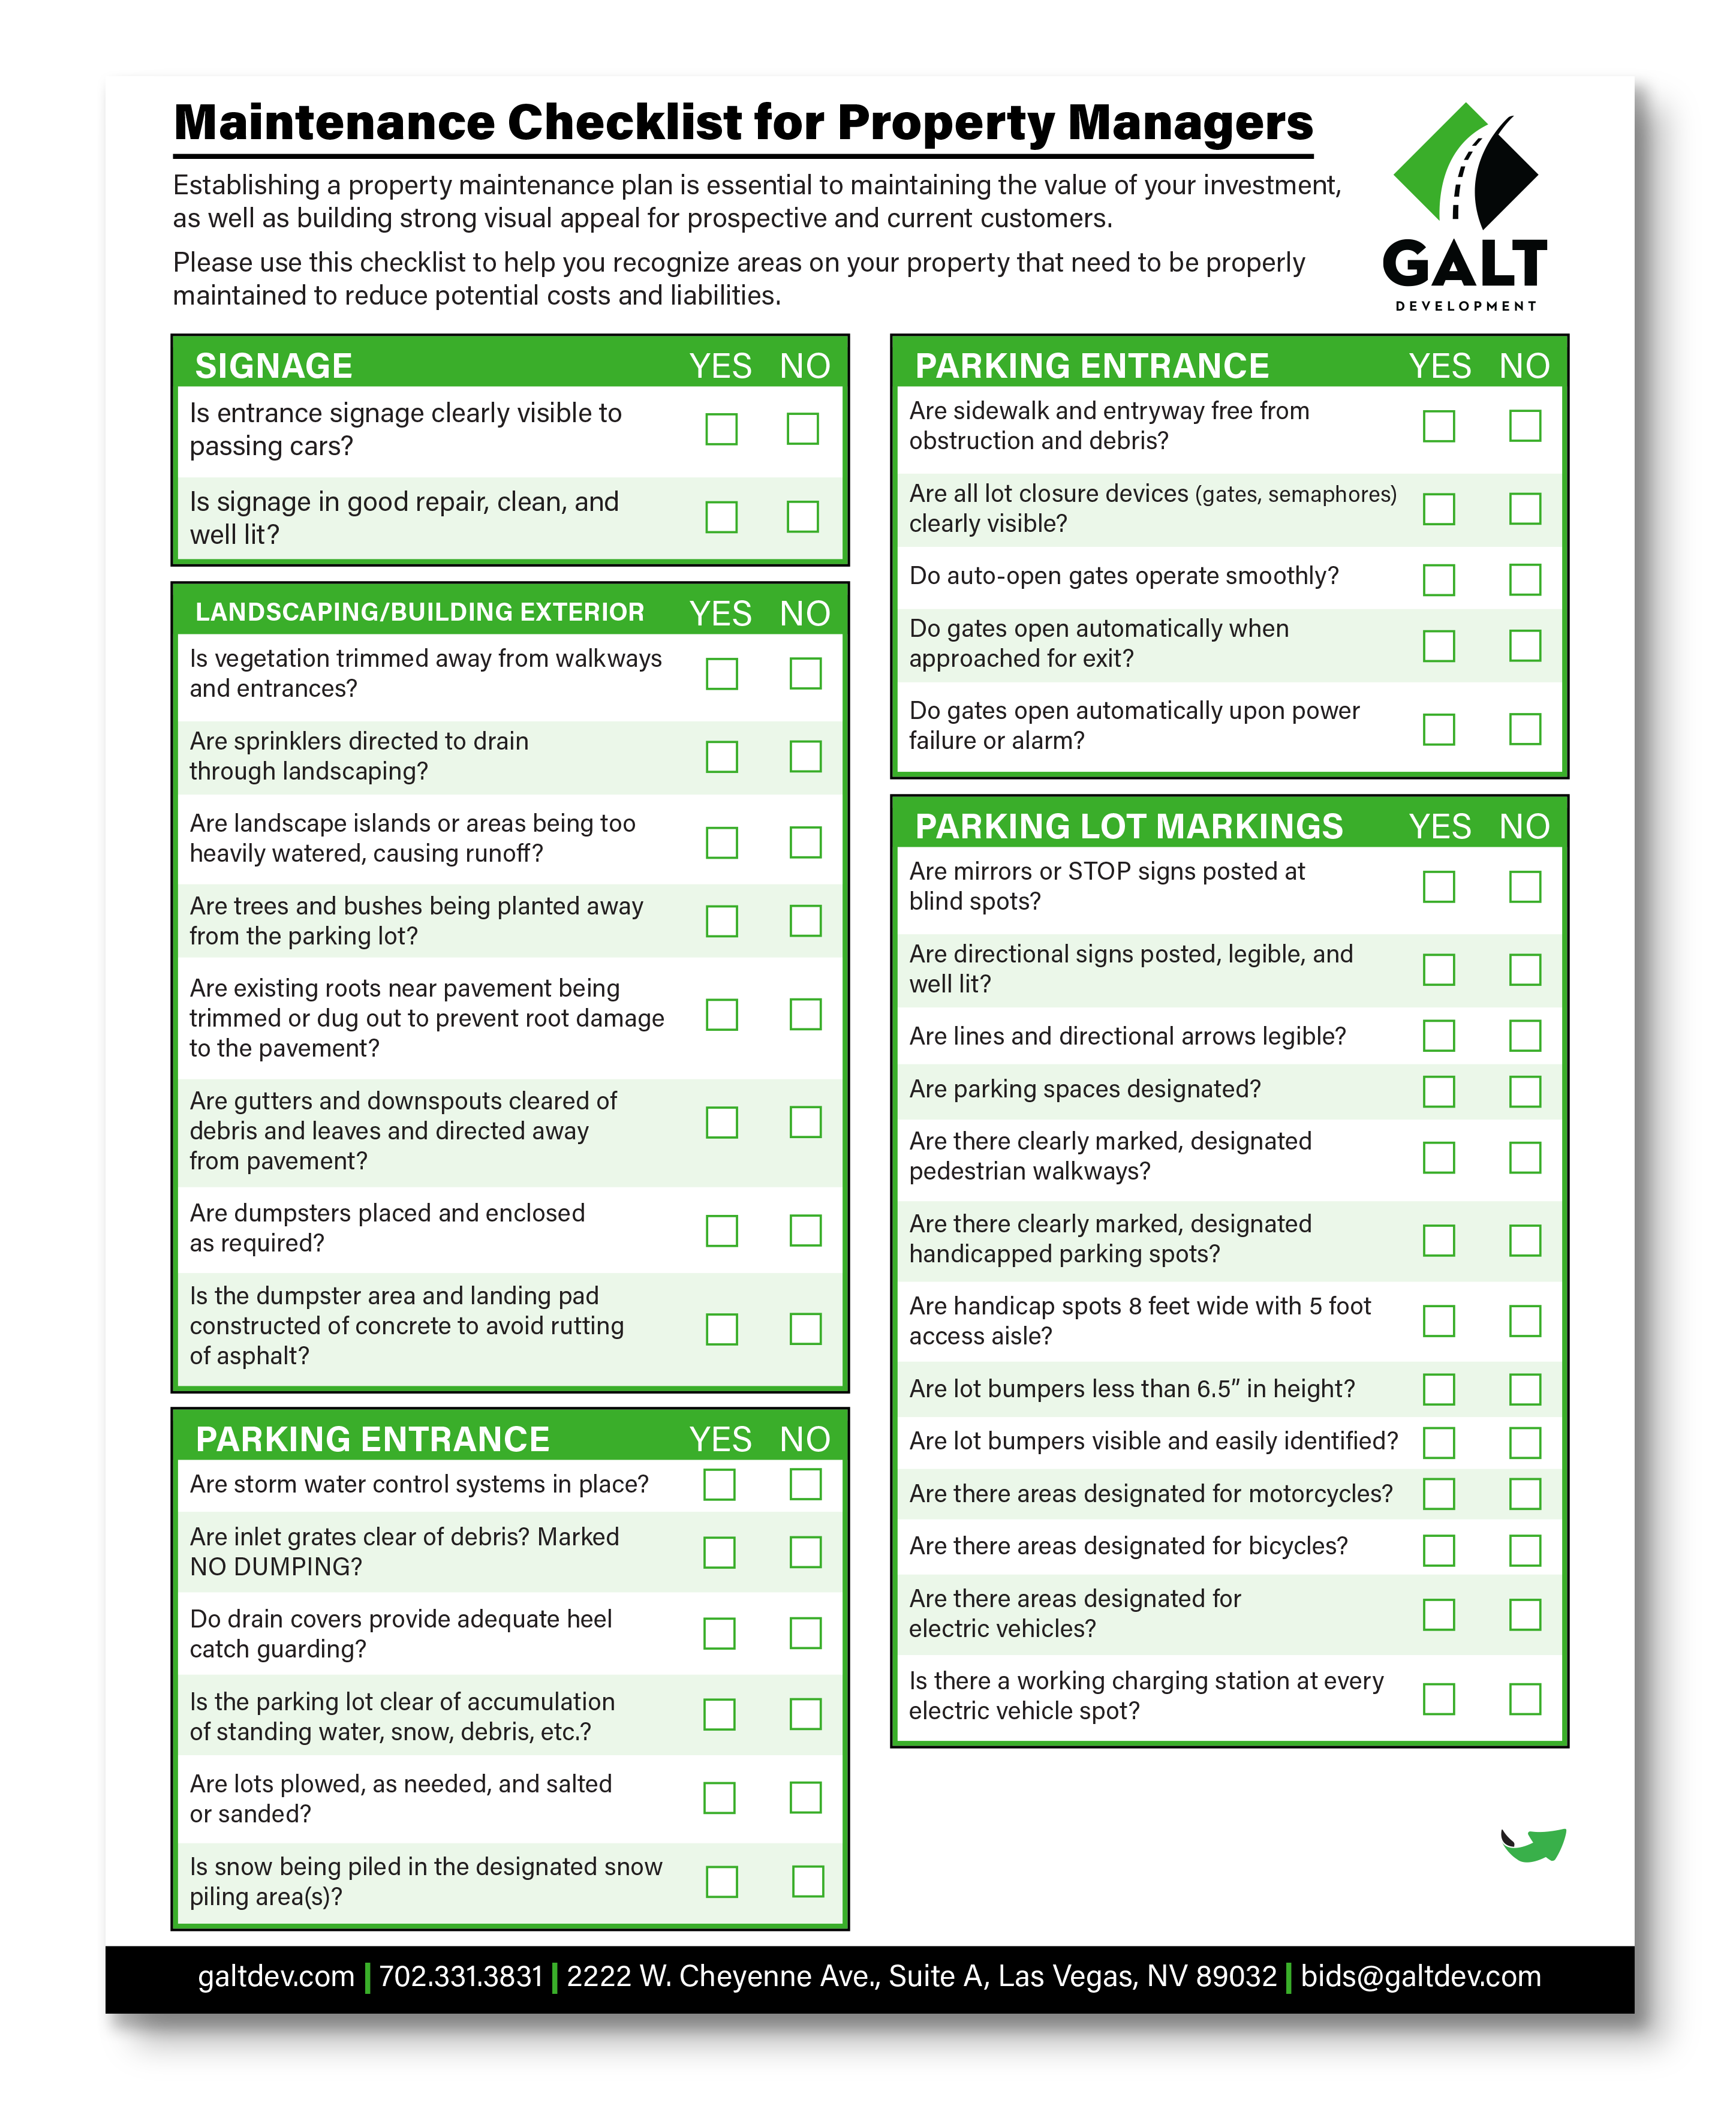 GALT Maintenance Checklist